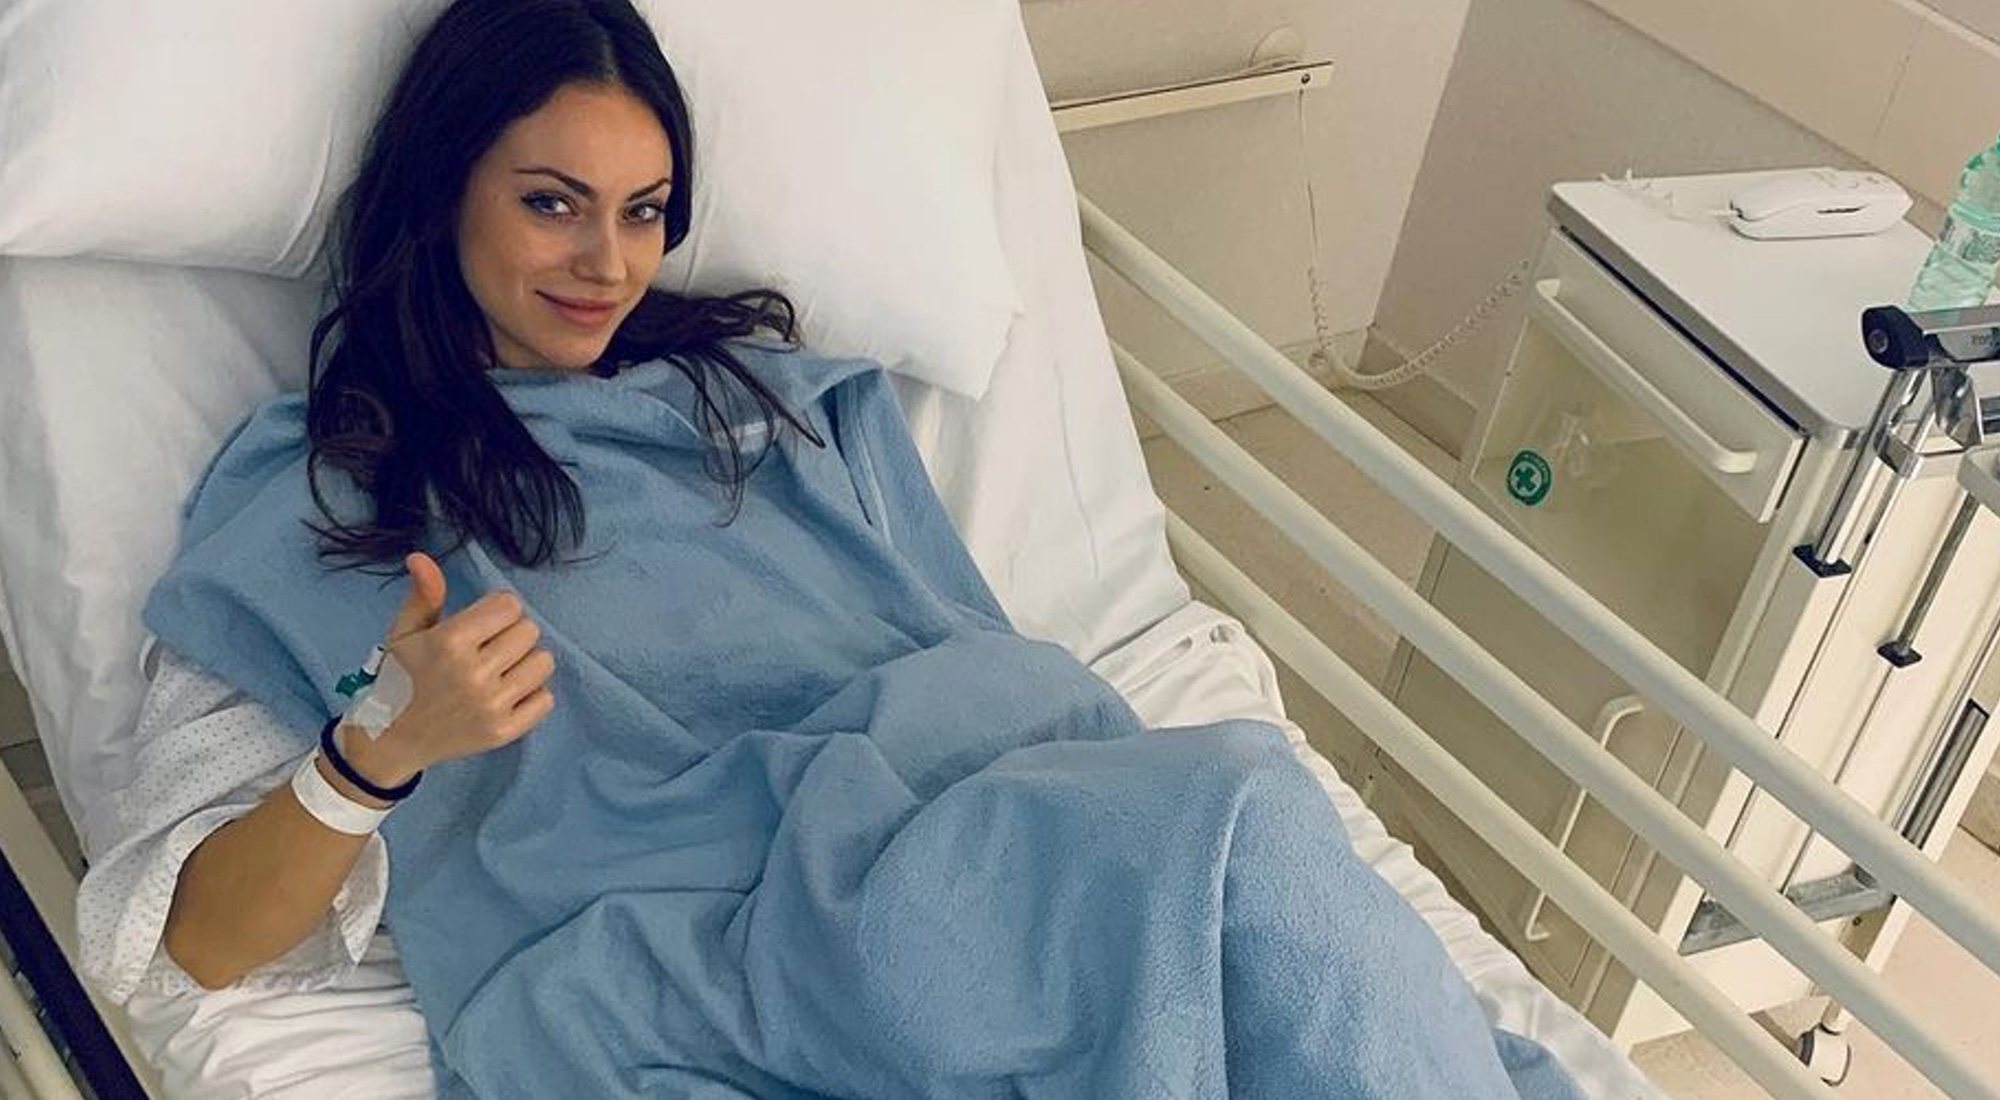 Niedziela Raluy comparte una imagen desde el hospital